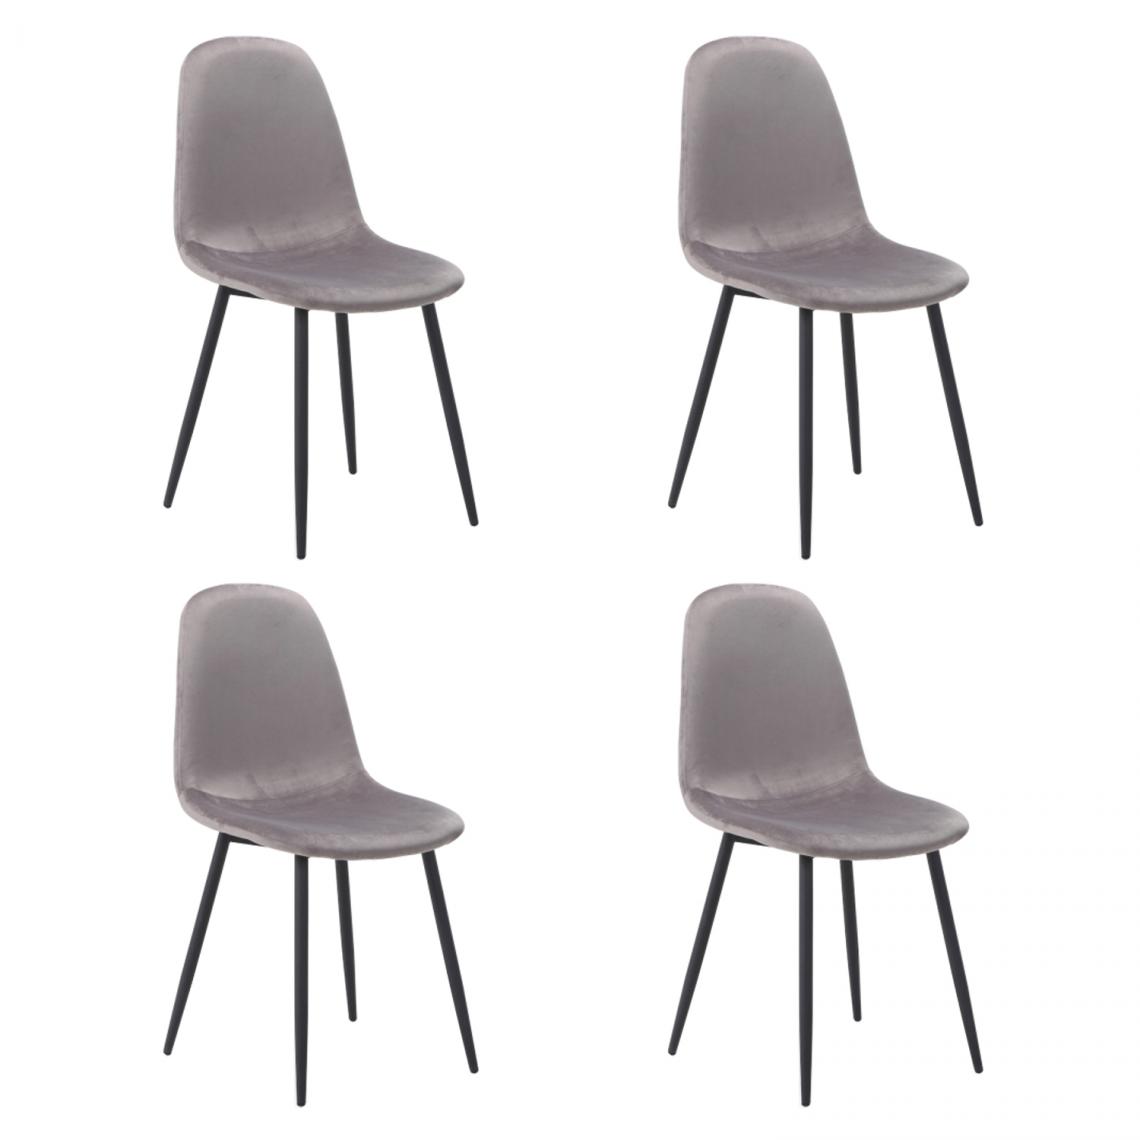 Hucoco - FOKZ - Lot de 4 chaises style scandinave - 86x44x39 cm - Tissu velouté - Pieds robustes en métal - Gris - Chaises